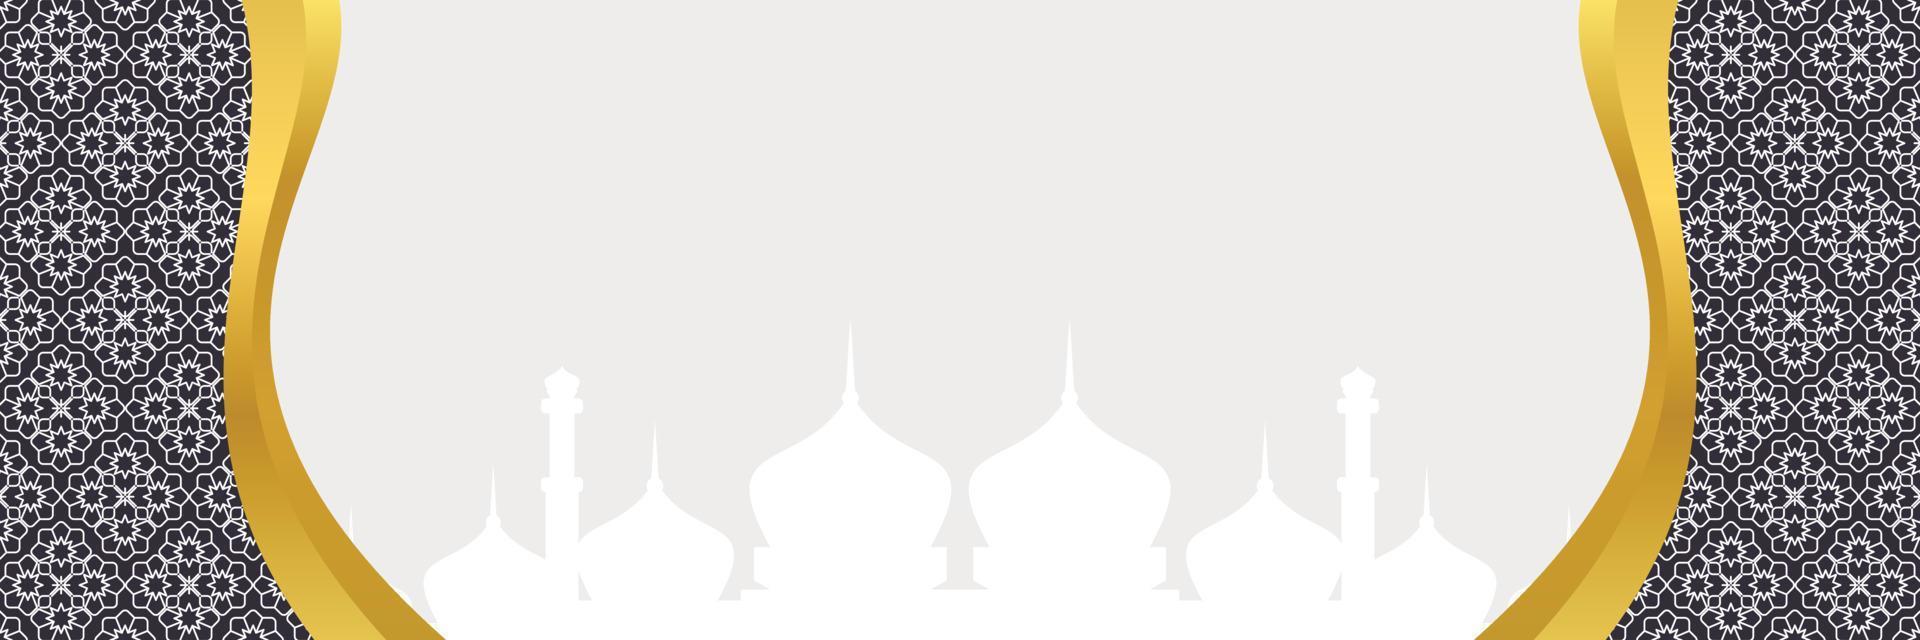 islamic bakgrund, med mandala prydnad och moské silhuett. vektor mall för banderoller, hälsning kort för islamic högtider, eid al fitr, ramadhan, eid al Adha